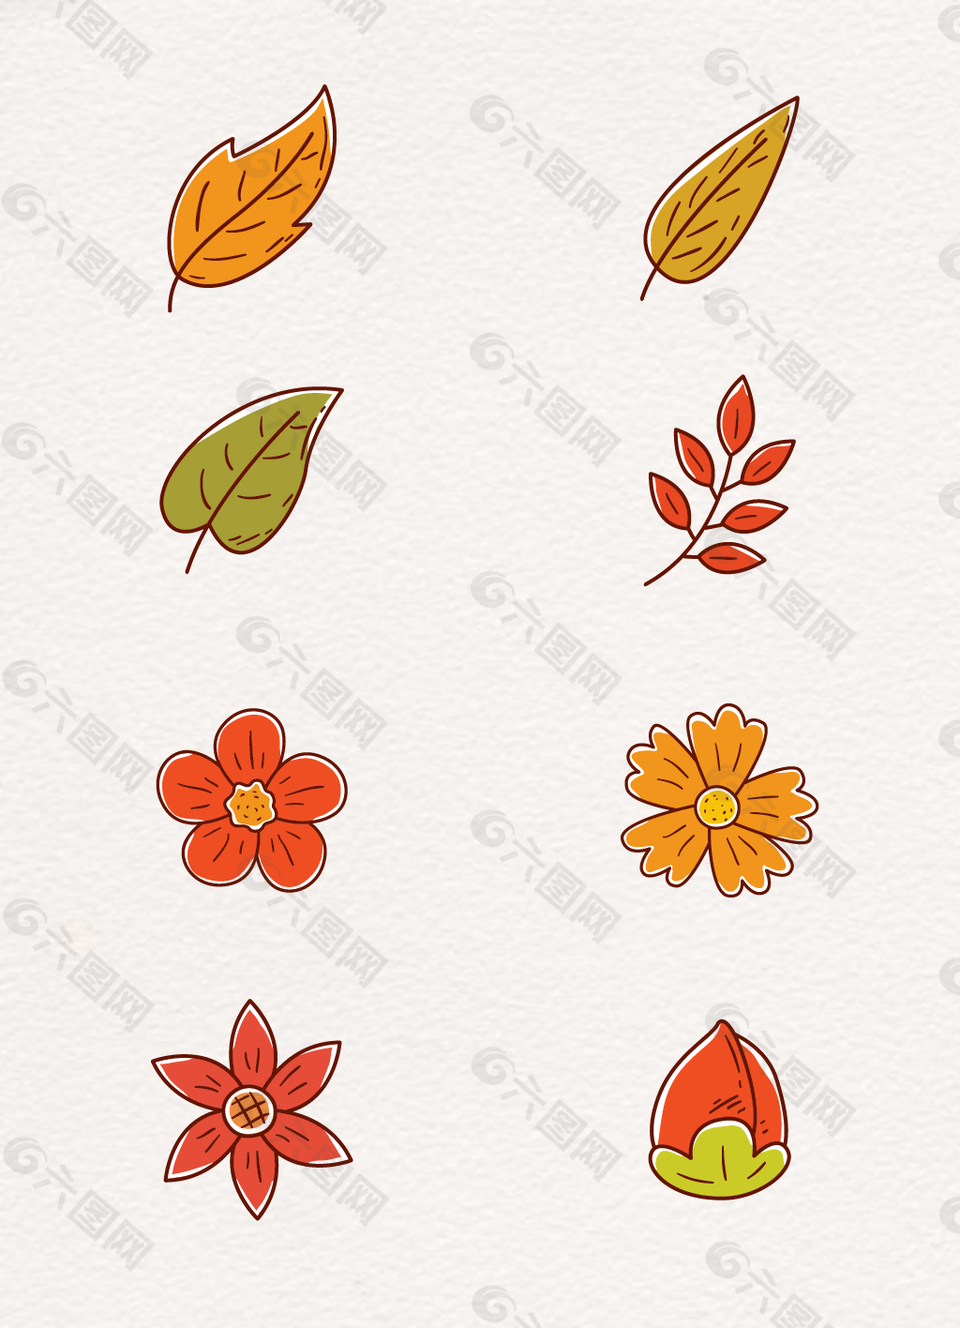 彩色卡通叶子植物花卉素材